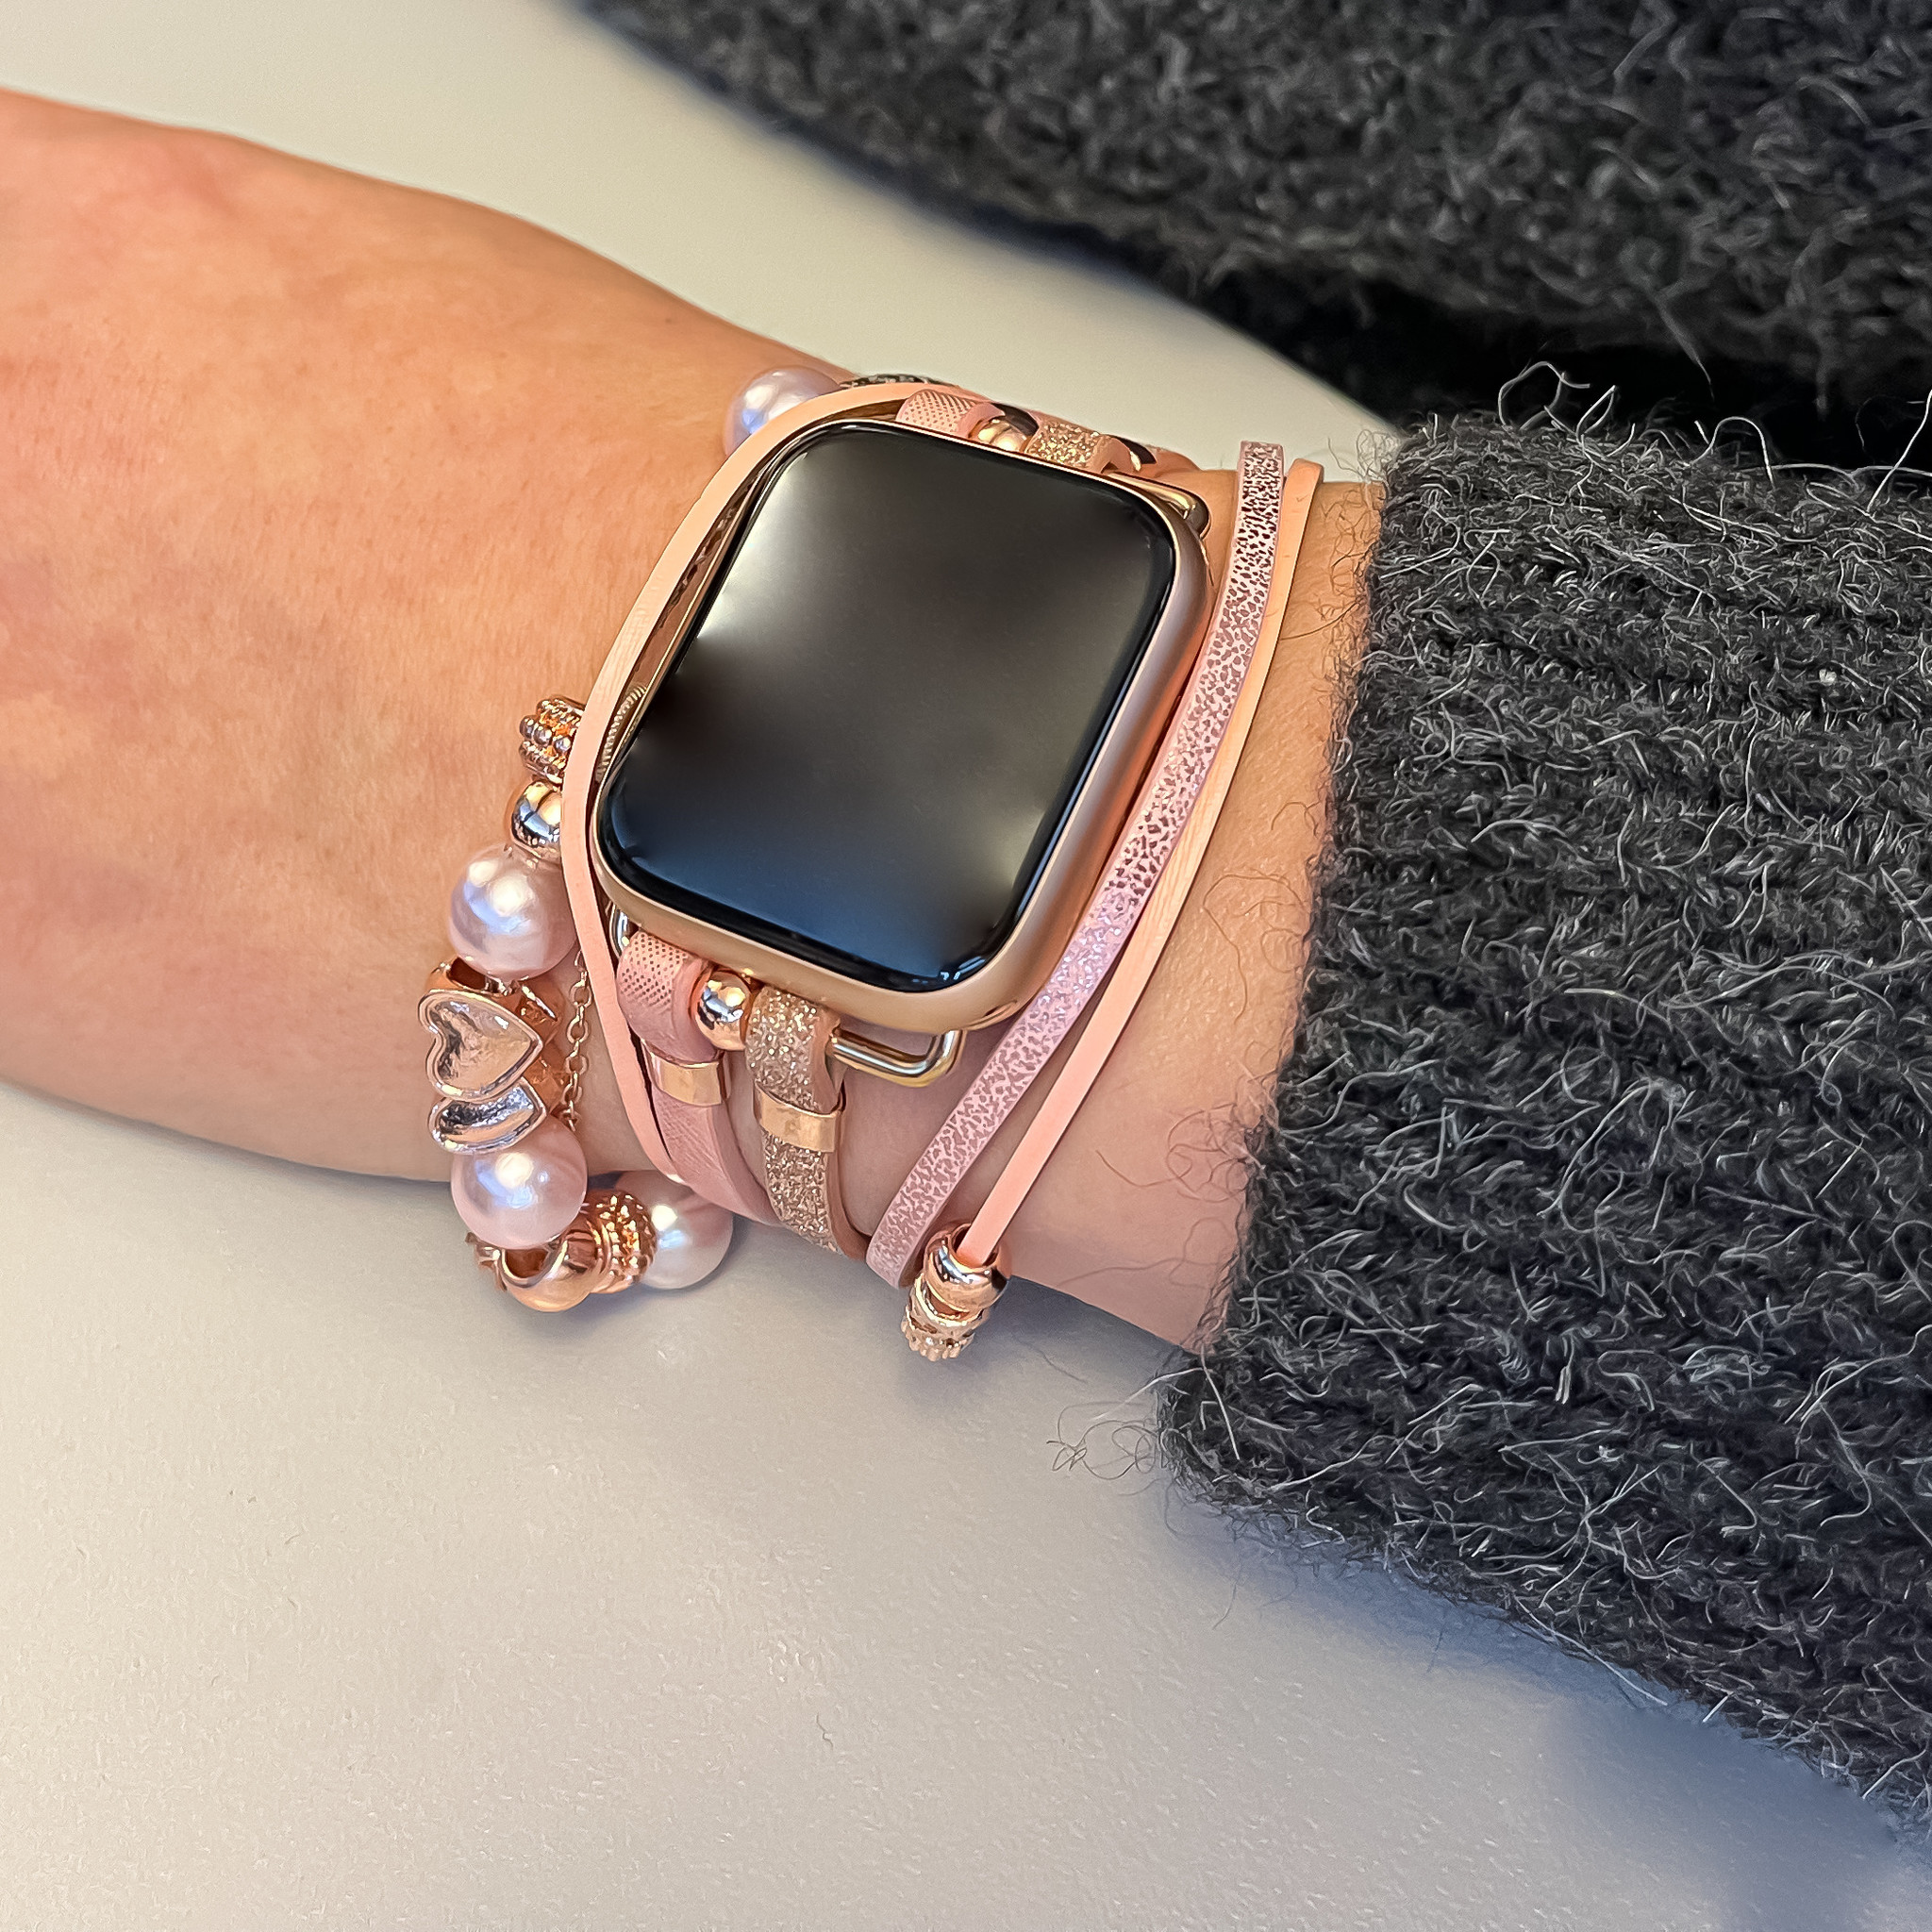 Correa de joyería para Apple Watch – Liz oro rosa